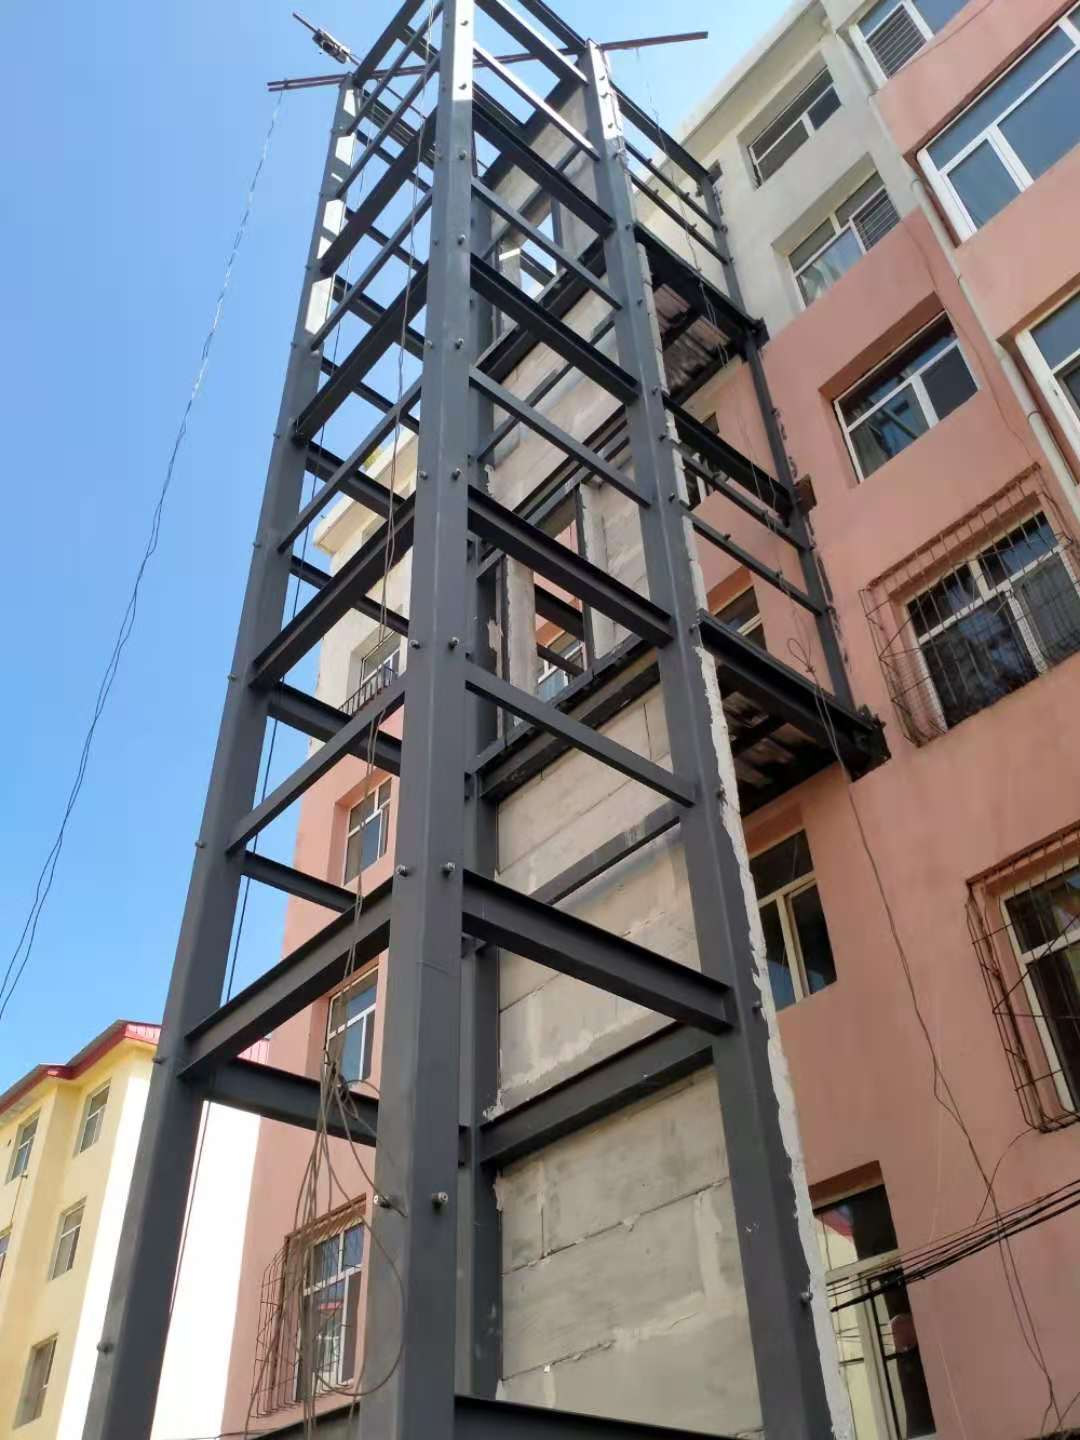 丰镇城建局小区观光电梯项目